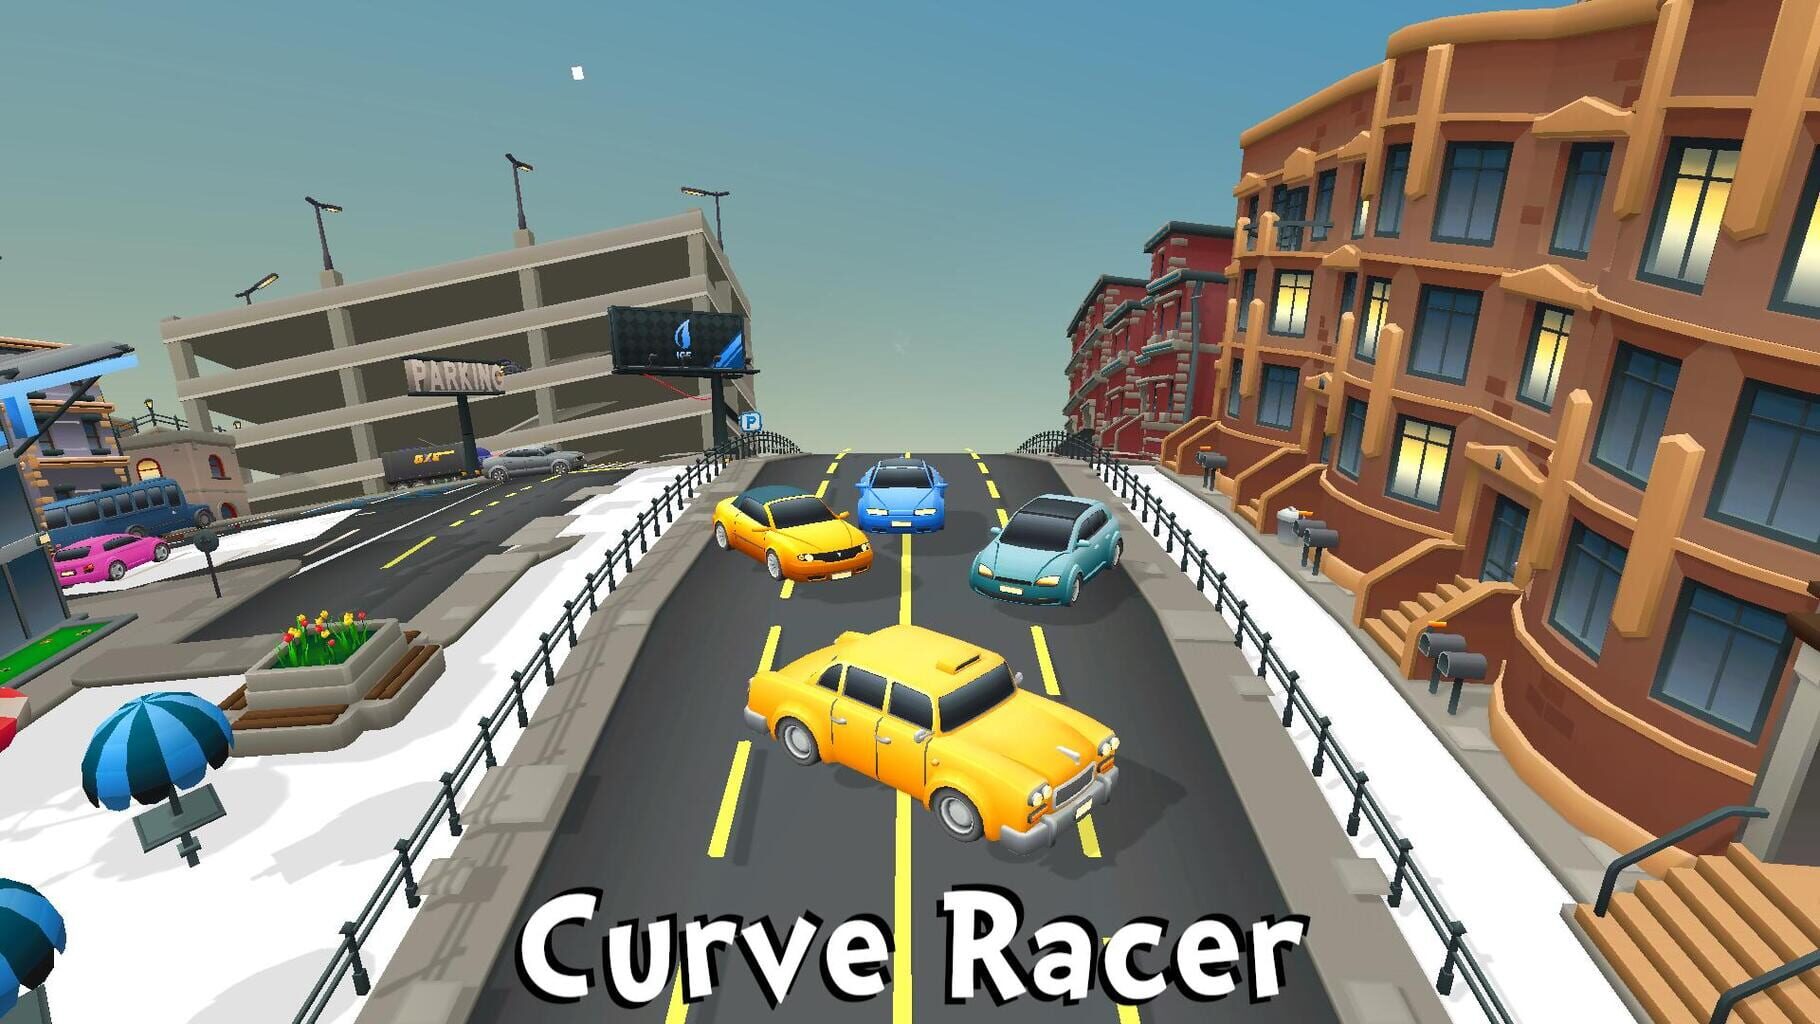 Curve Racer artwork